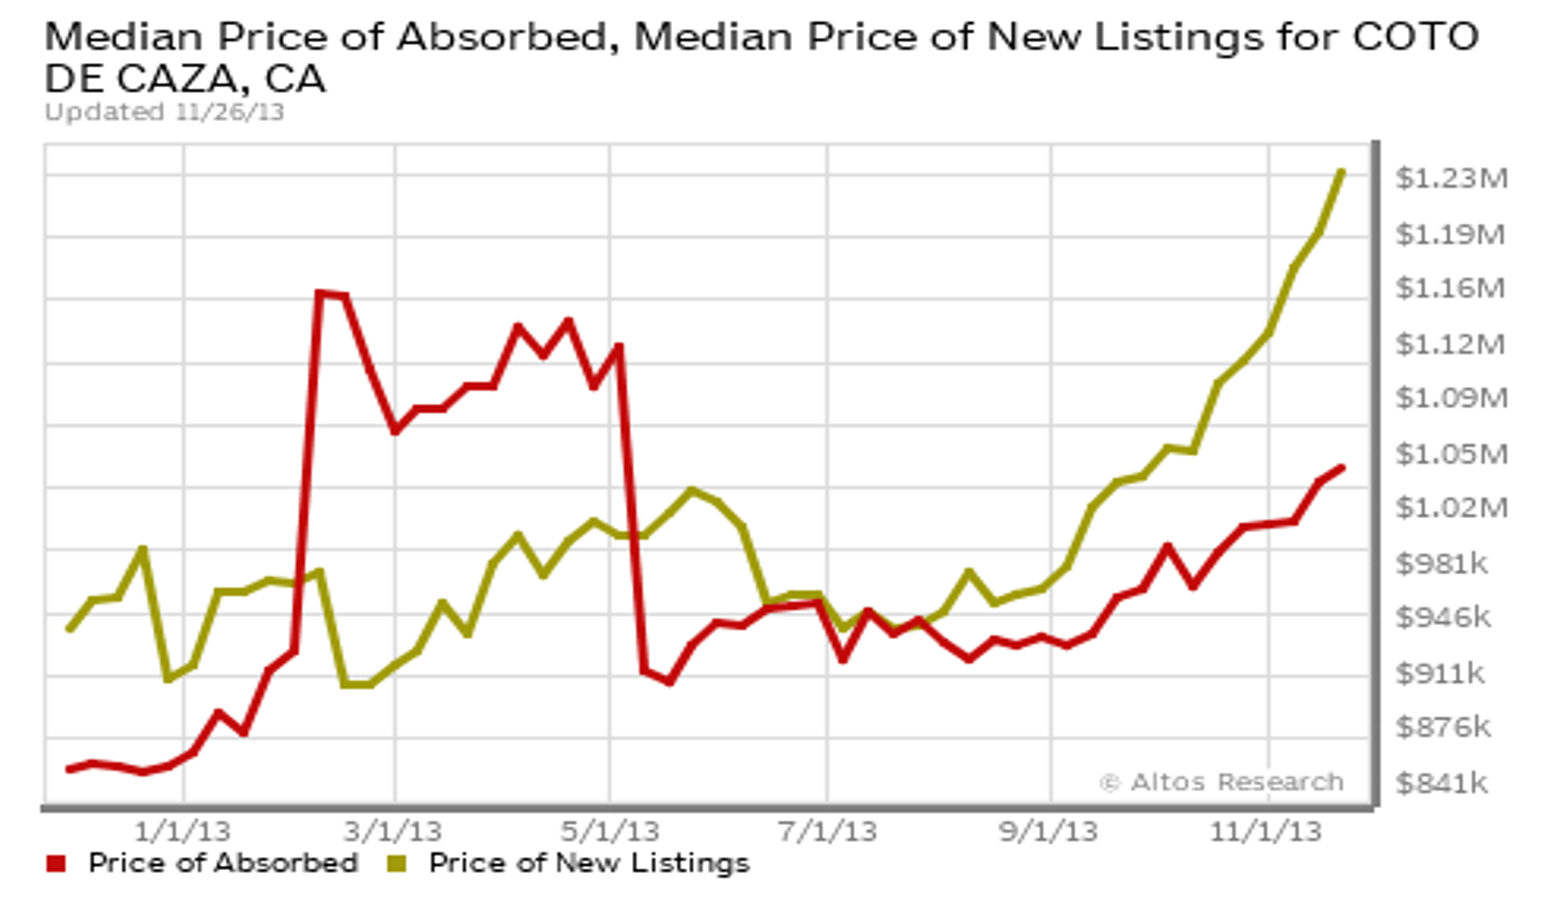 Median Price of Absorbed vs Median Price of New Listing in Coto de Caza, CA